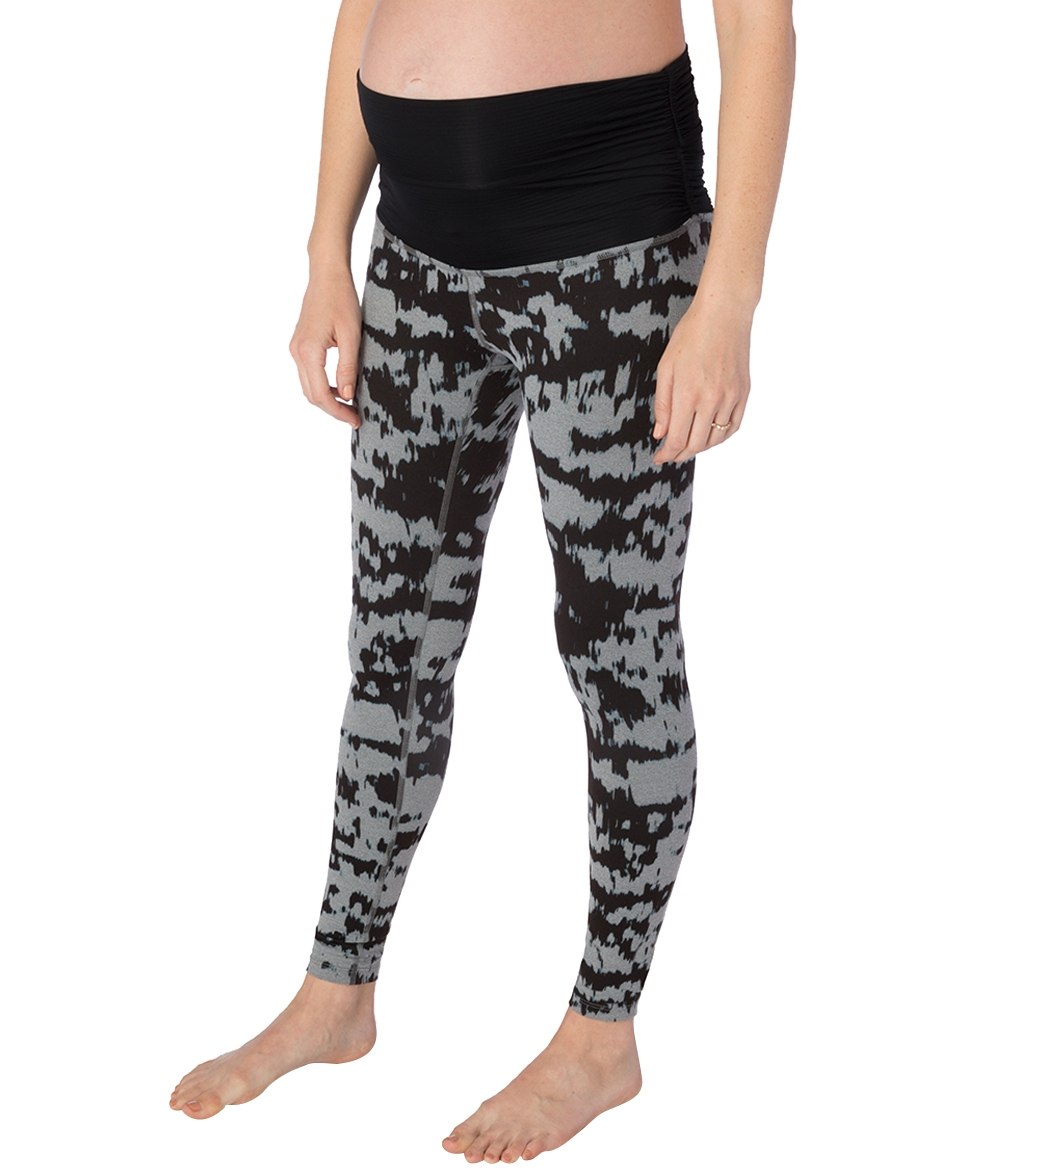 Beyond Yoga, Pants & Jumpsuits, Beyond Yoga Size Small Gray Yoga Pant